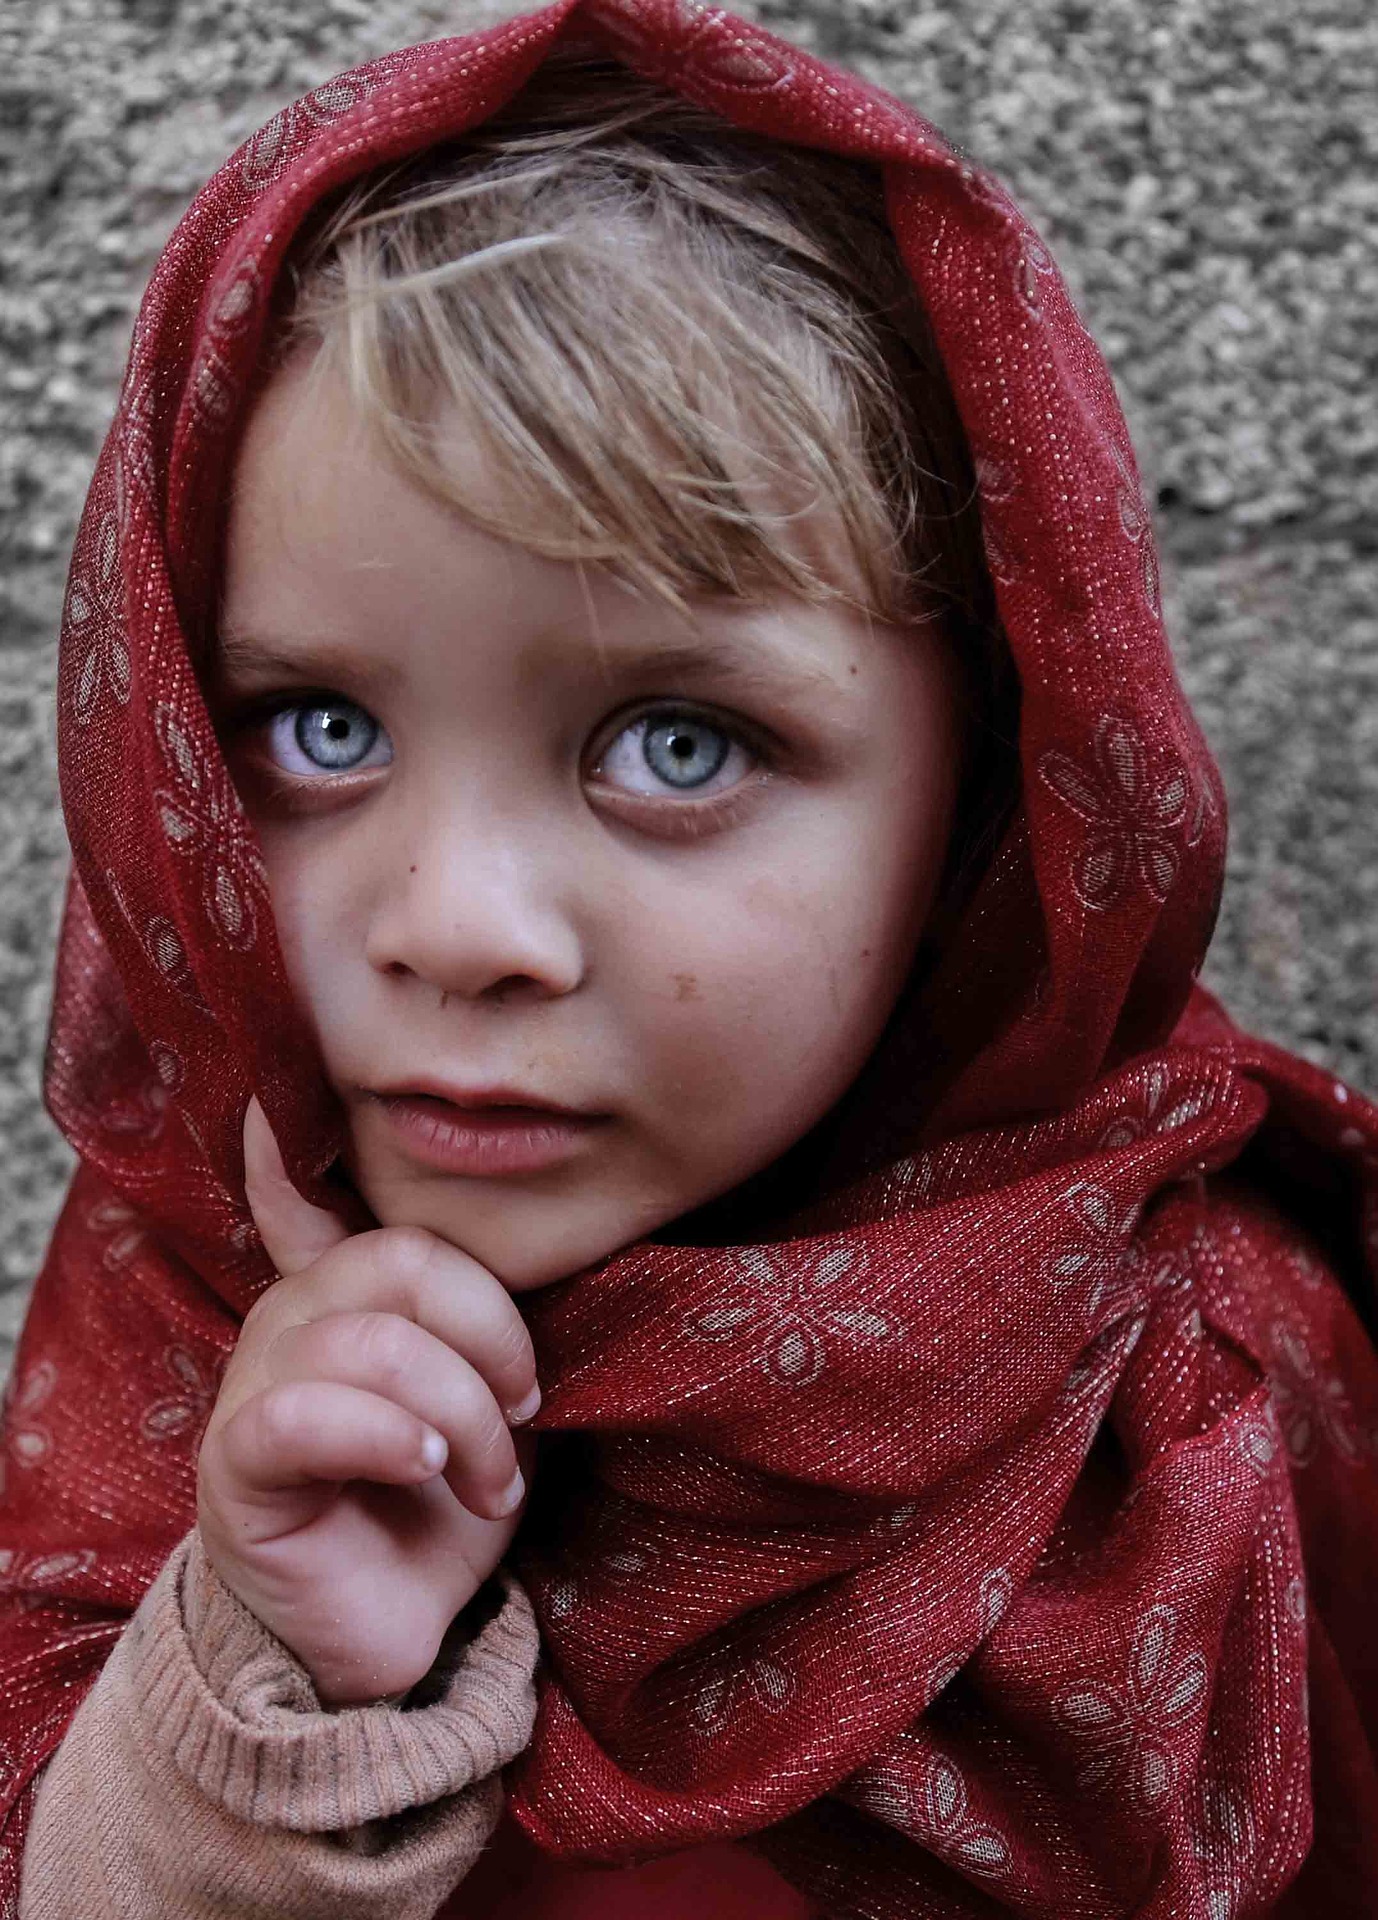 dziecko z błękitnymi oczami, z czerwoną chustką na głowie